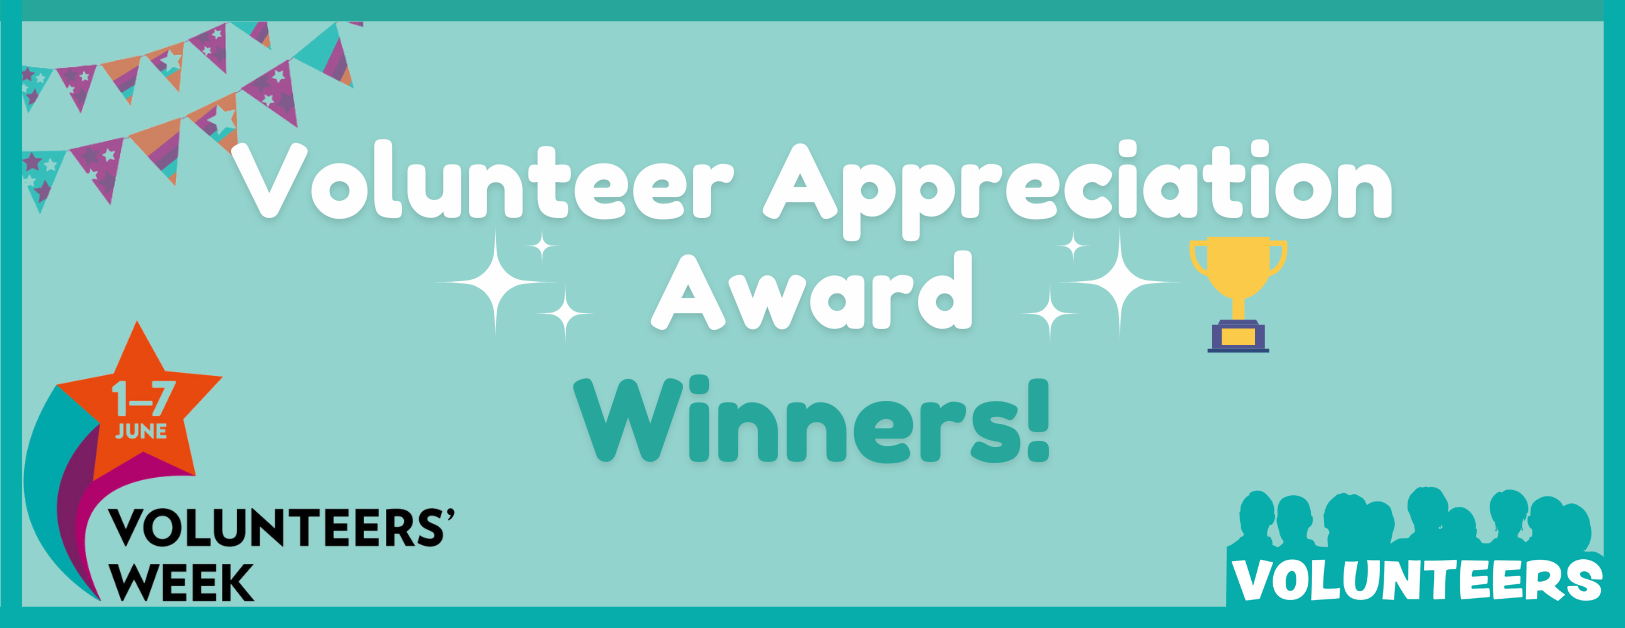 Volunteer Appreciation Award WINNERS!